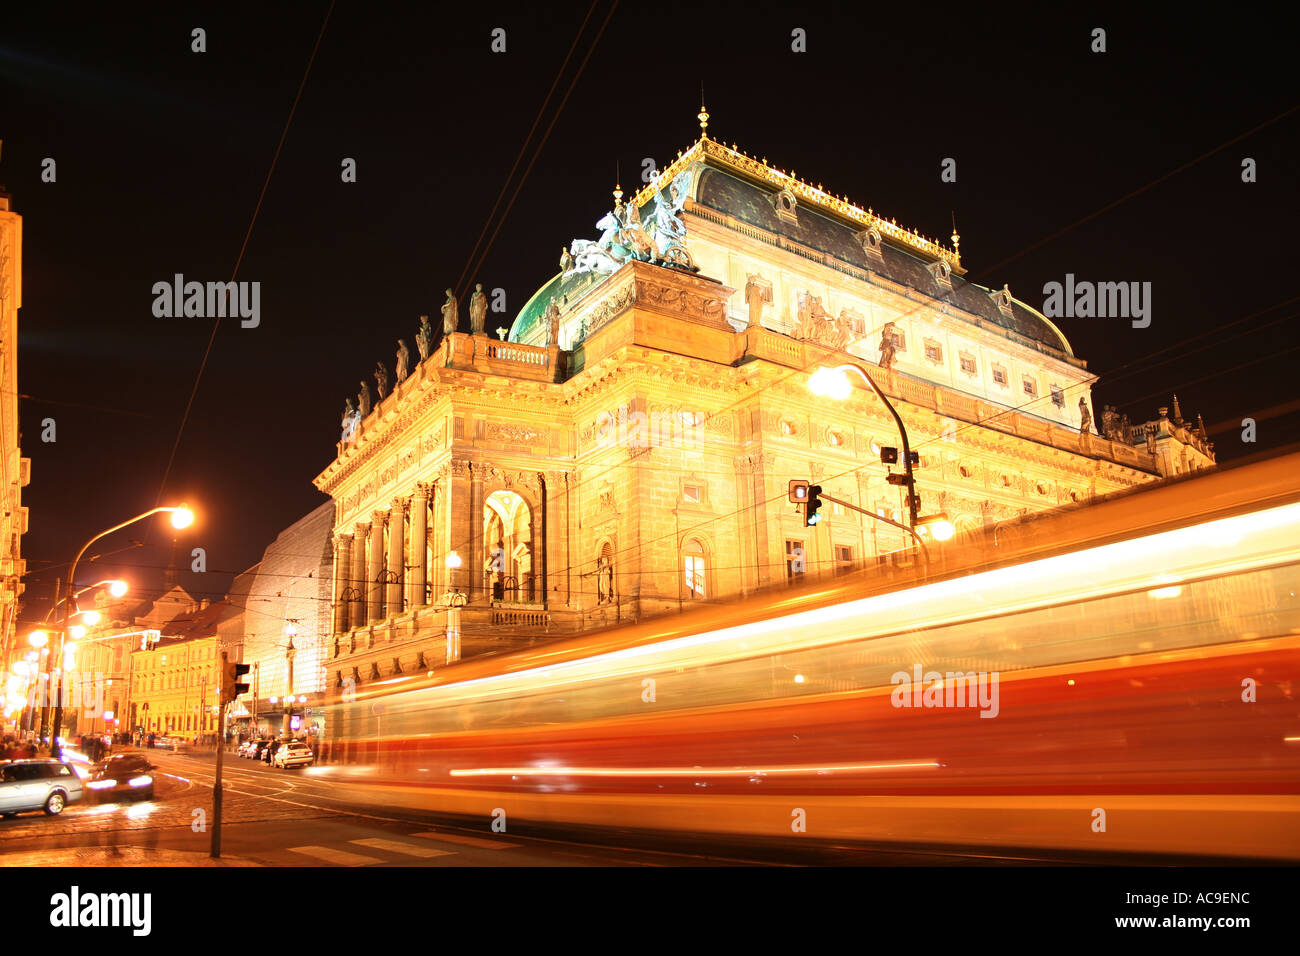 Théâtre national (Narodni Divadlo) vu de nuit depuis le pont de la légion (MOST Legii), République tchèque de Prague. Un tramway passe au premier plan. Banque D'Images